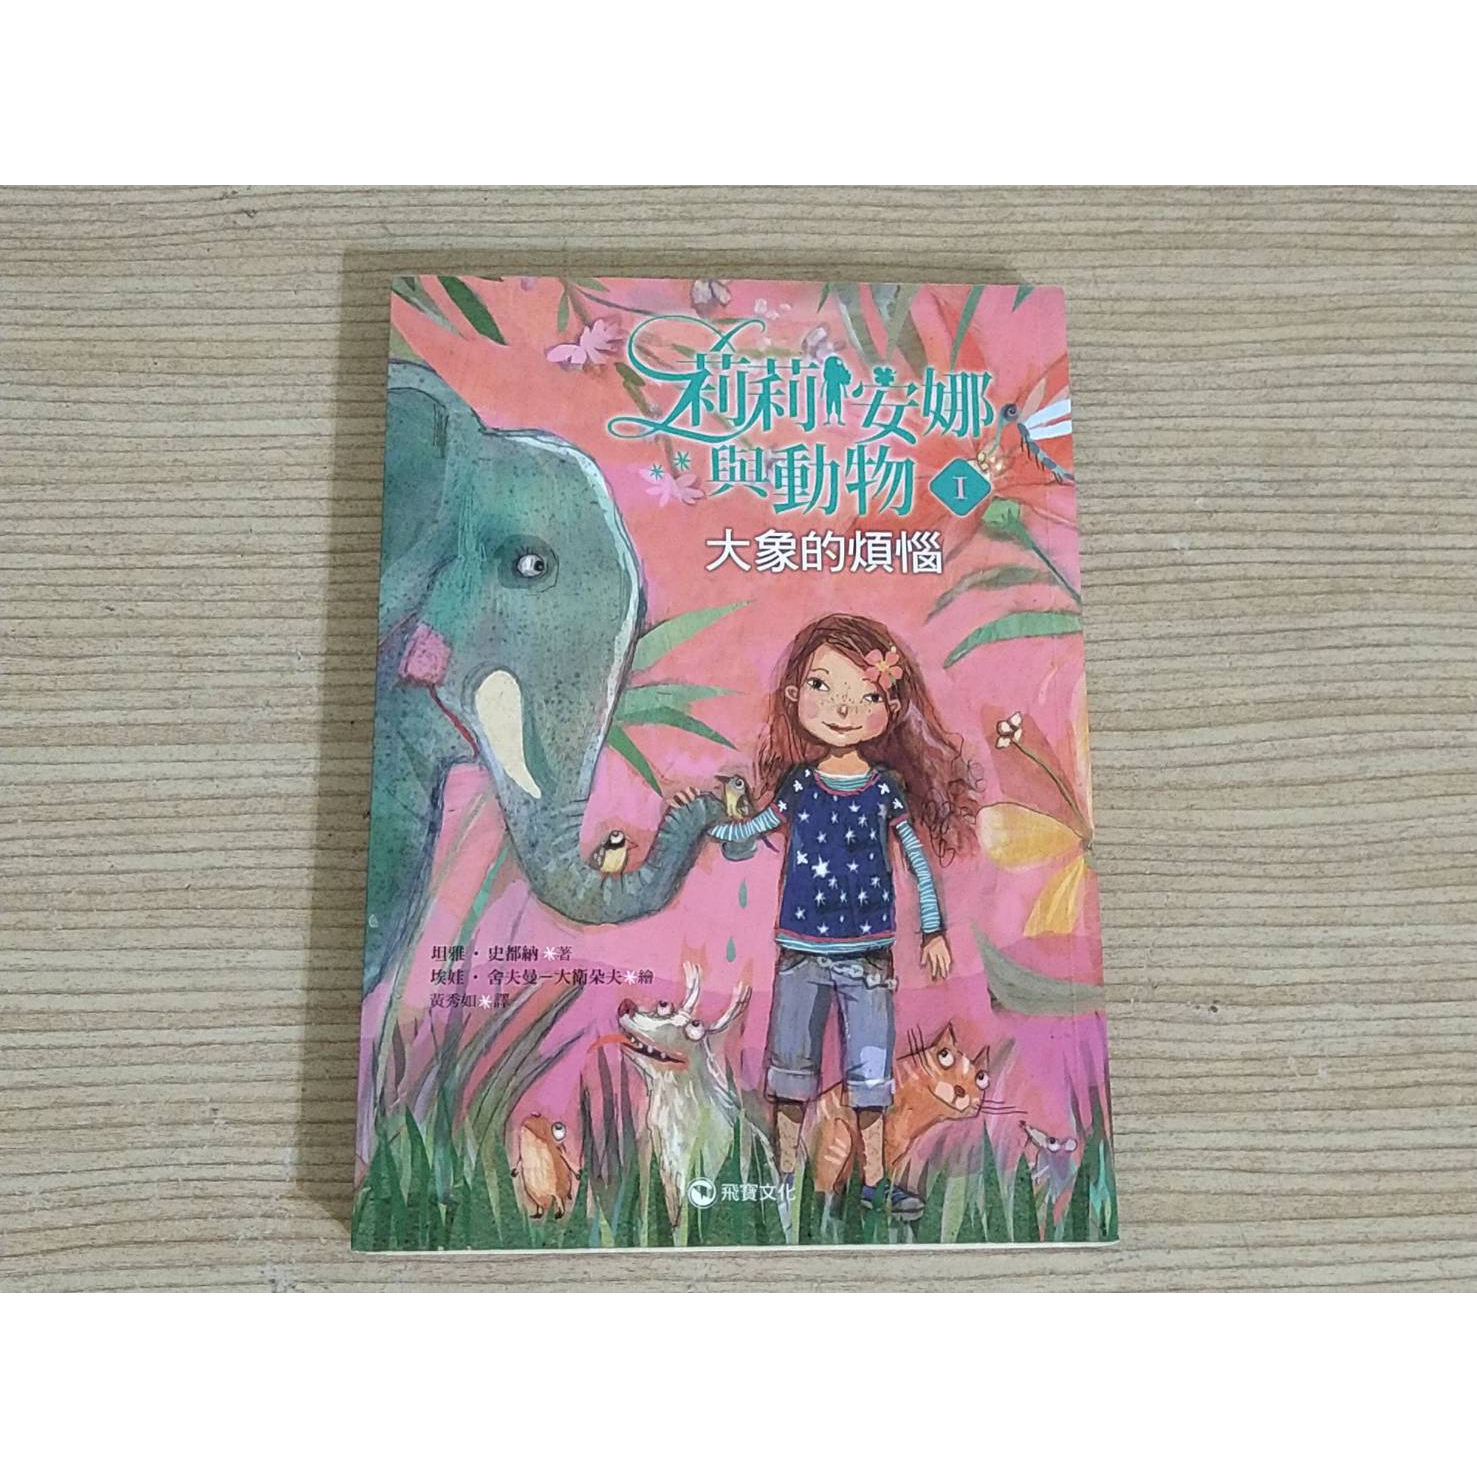 二手飛寶文化童書 莉莉安娜與動物 1大象的煩惱 坦雅‧史都納 那些動物教會我們的事 平裝版 校園成長輕小說 中高年級適讀